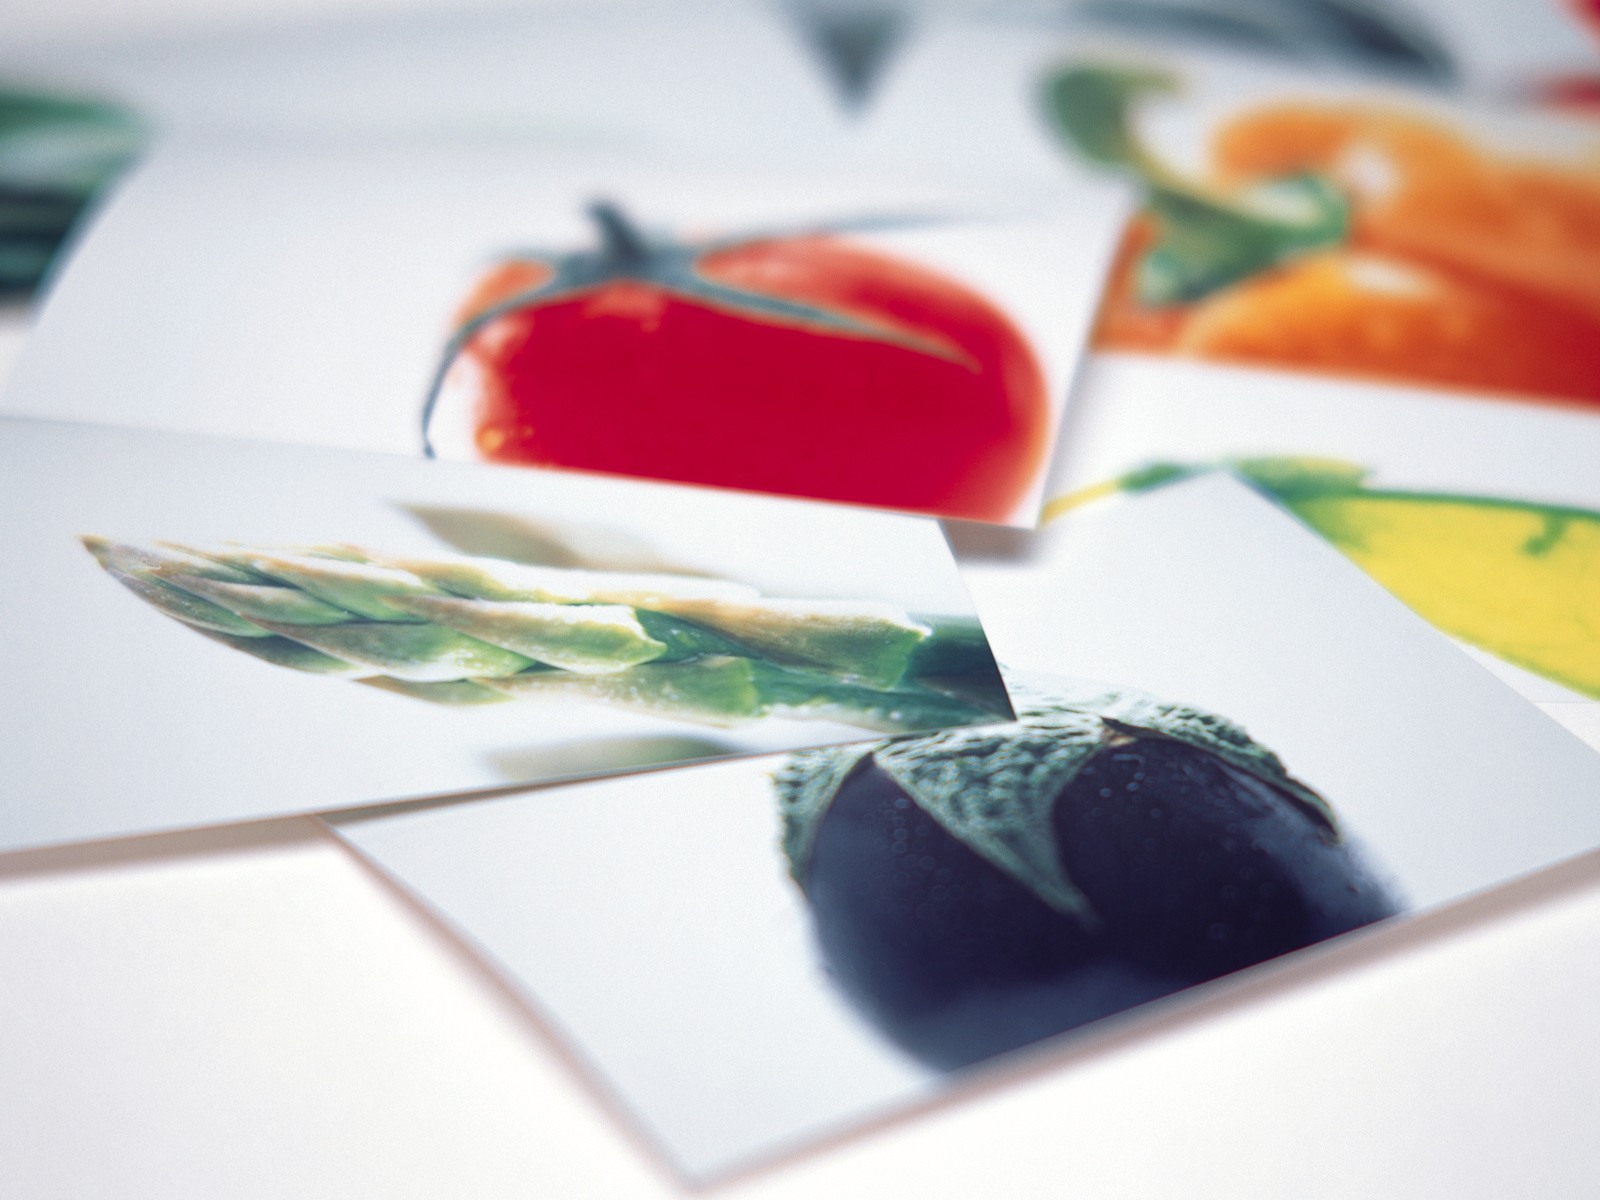 壁纸1600x1200 Photo manipulation of Fruits and Vegetables壁纸 精致水果蔬菜摄影壁纸壁纸 精致水果蔬菜摄影壁纸图片 精致水果蔬菜摄影壁纸素材 摄影壁纸 摄影图库 摄影图片素材桌面壁纸